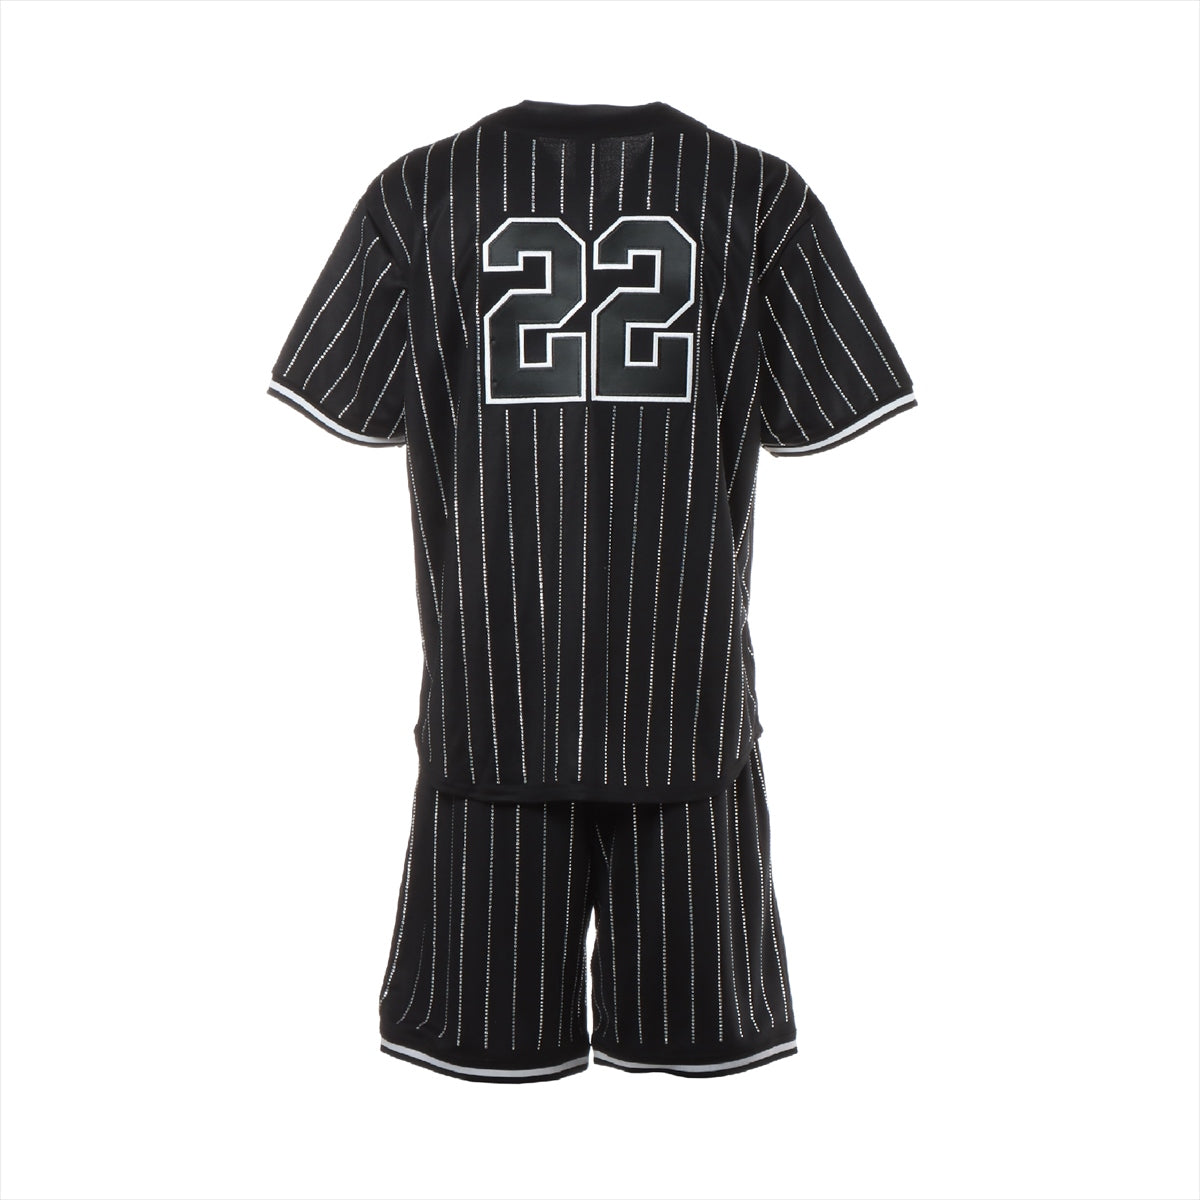 シュプリーム 22SS ポリエステル セットアップ S メンズ ブラック Rhinestone Stripe Basketball Jersey/Short